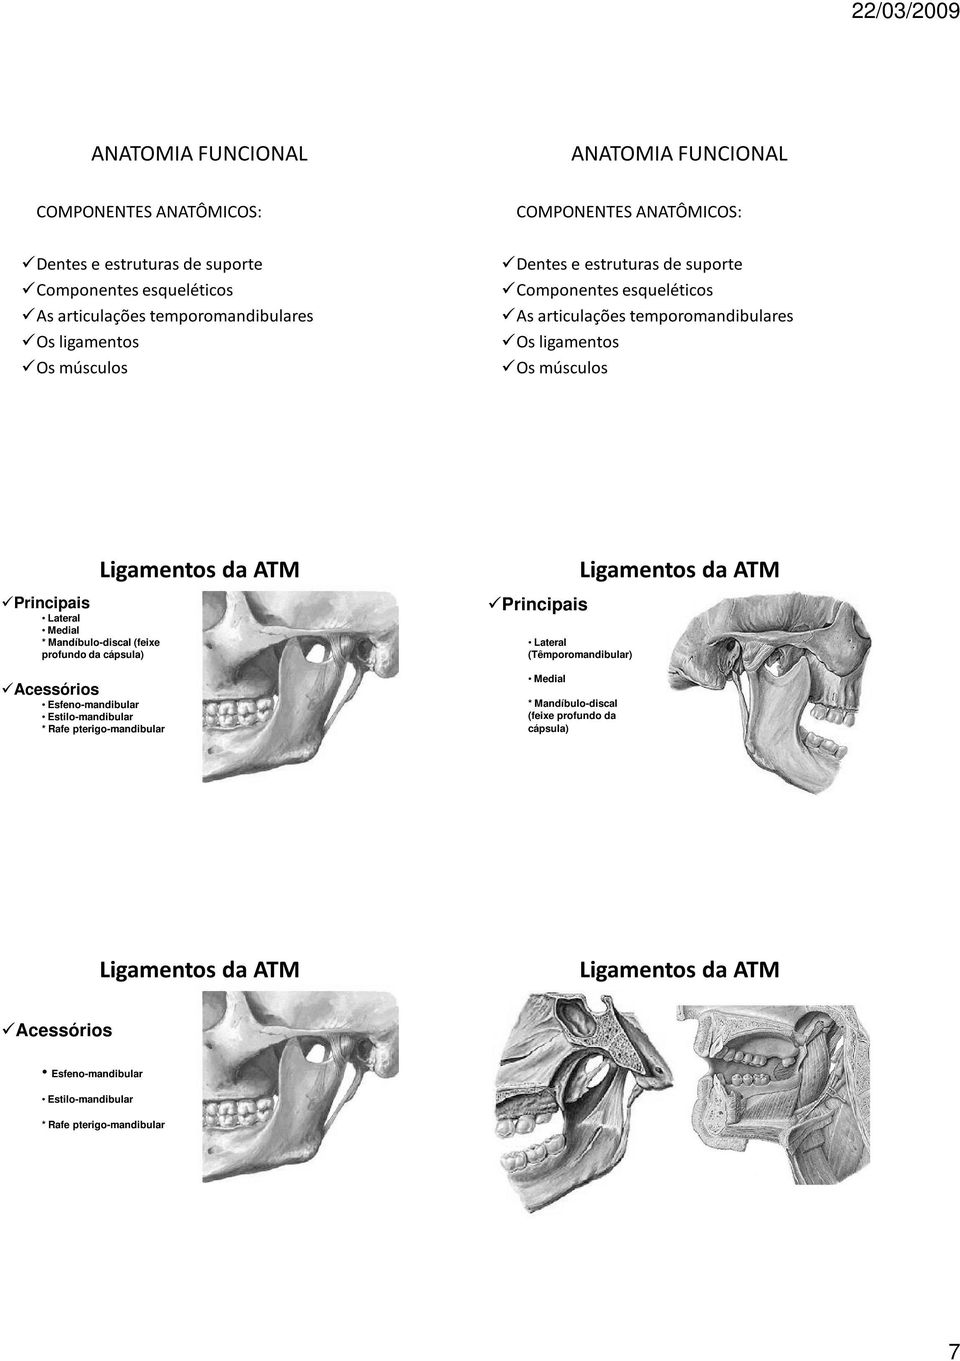 Ligamentos da ATM Lateral (Têmporomandibular) Medial * Mandíbulo-discal (feixe profundo da